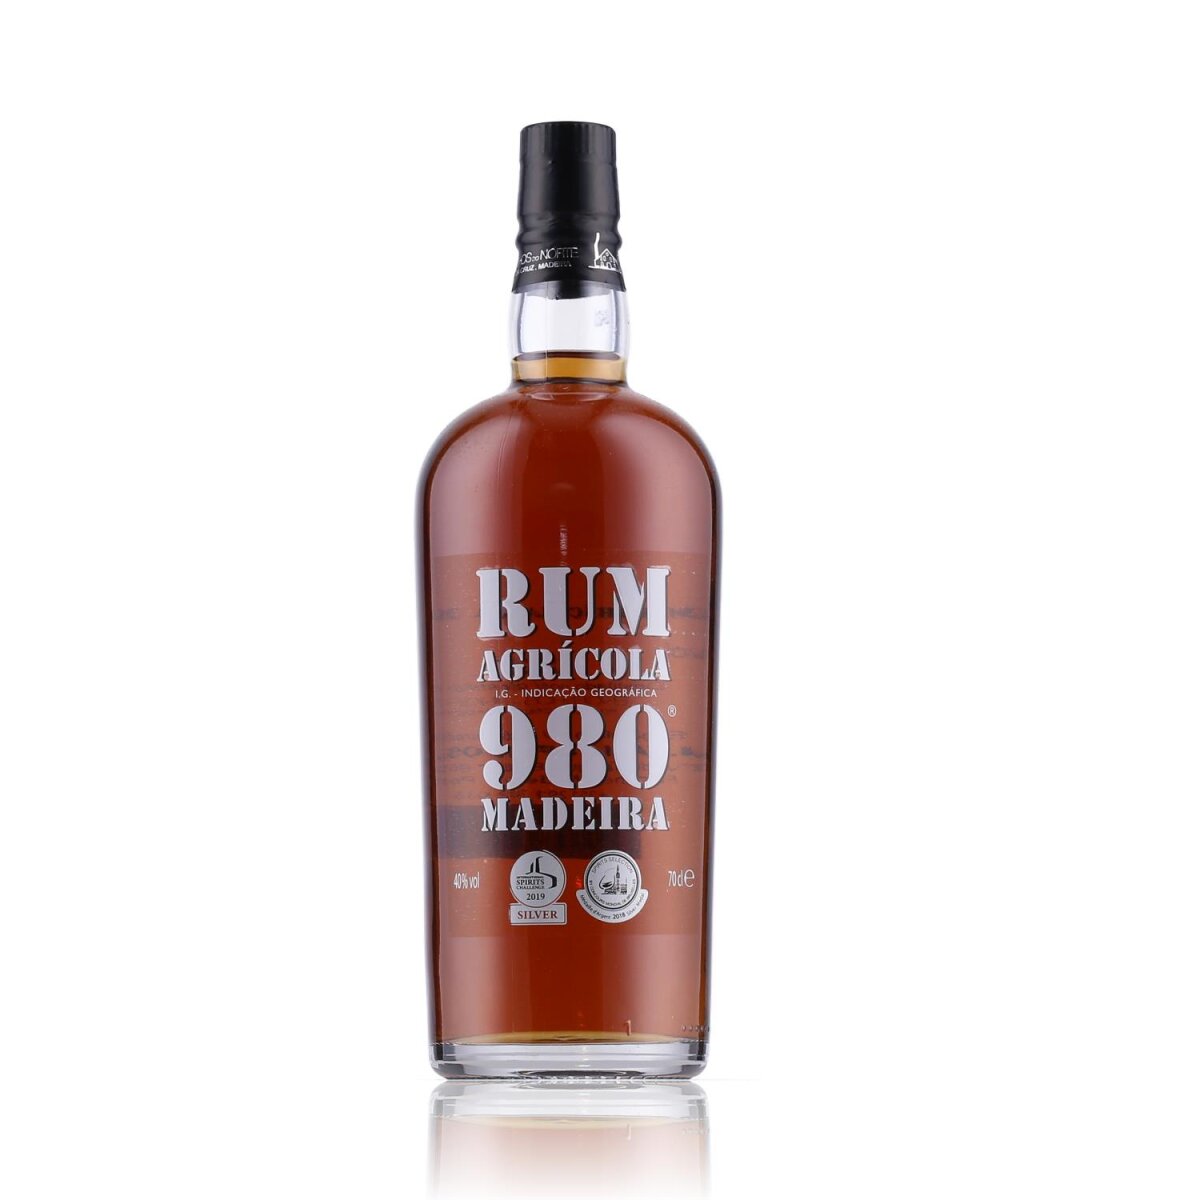 57,99 Rum 980 40% € 0,7l, Agricola Vol. Madeira